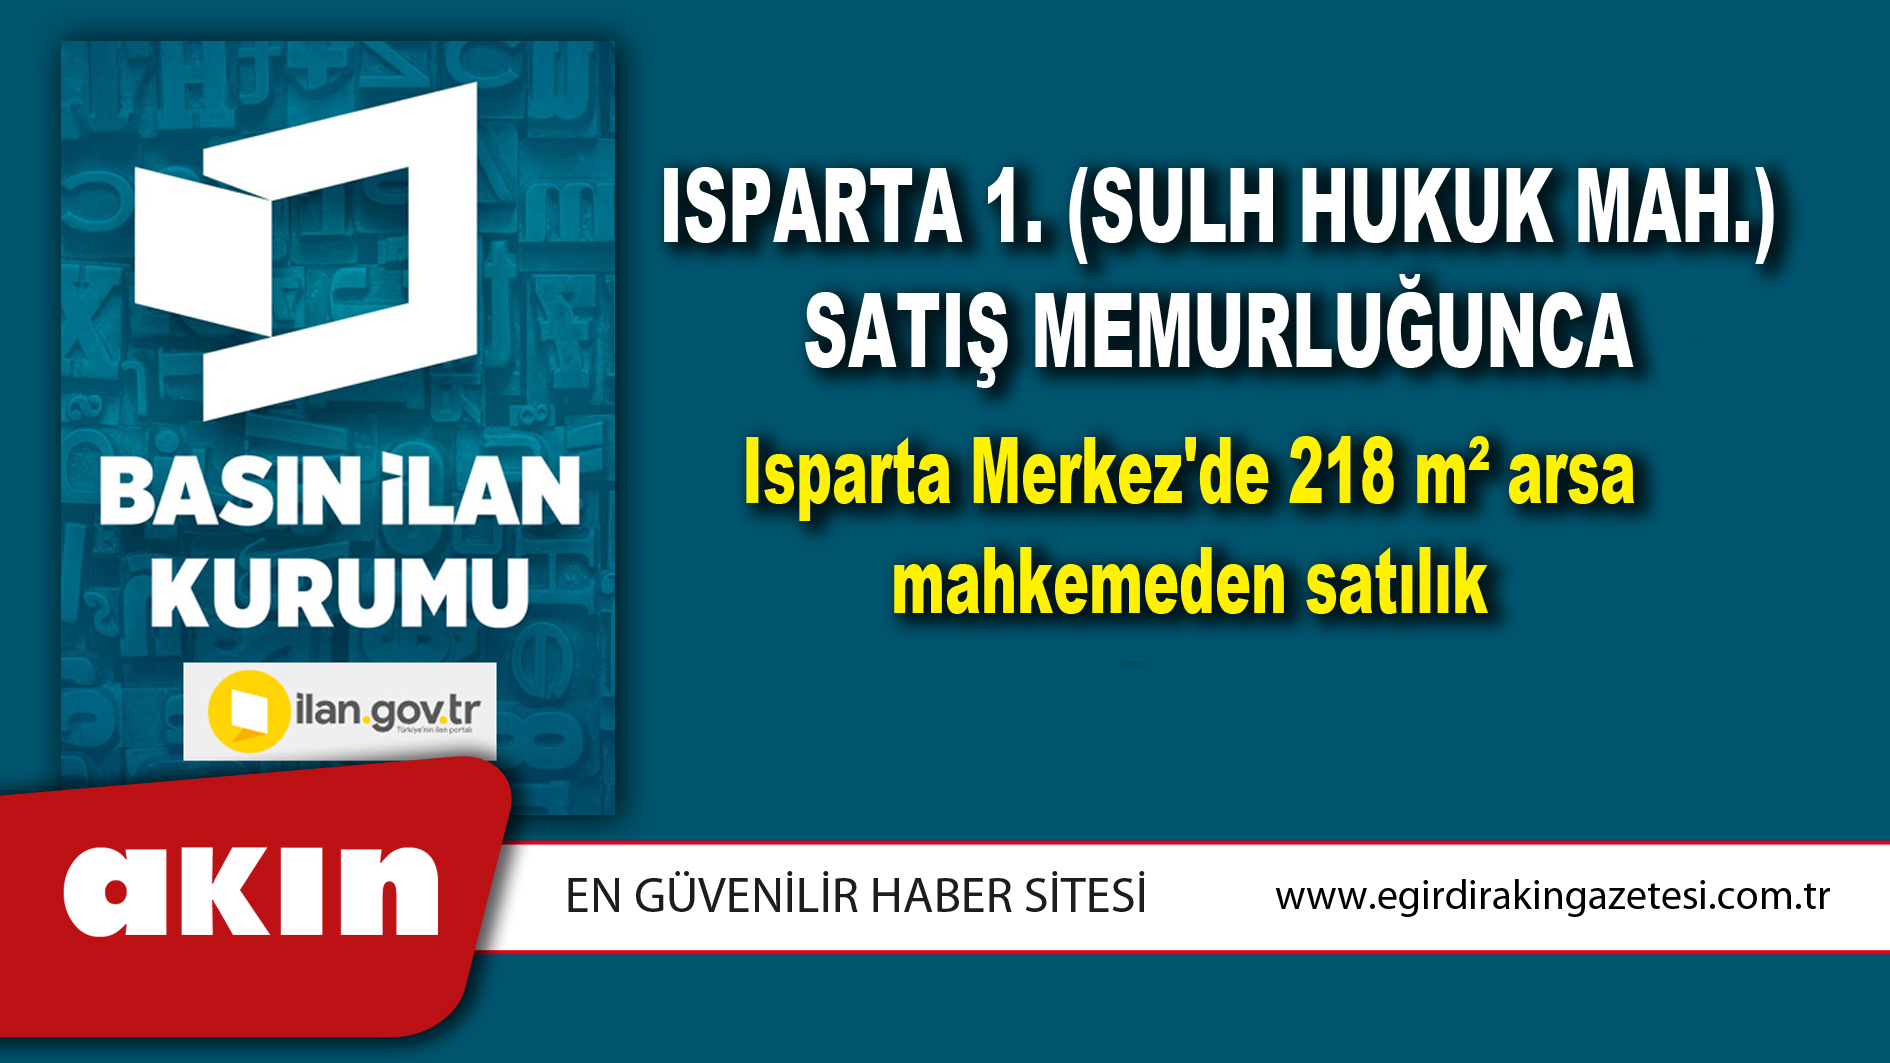 Isparta 1. (Sulh Hukuk Mah.) Satış Memurluğunca Isparta Merkez'de 218 m² arsa mahkemeden satılık